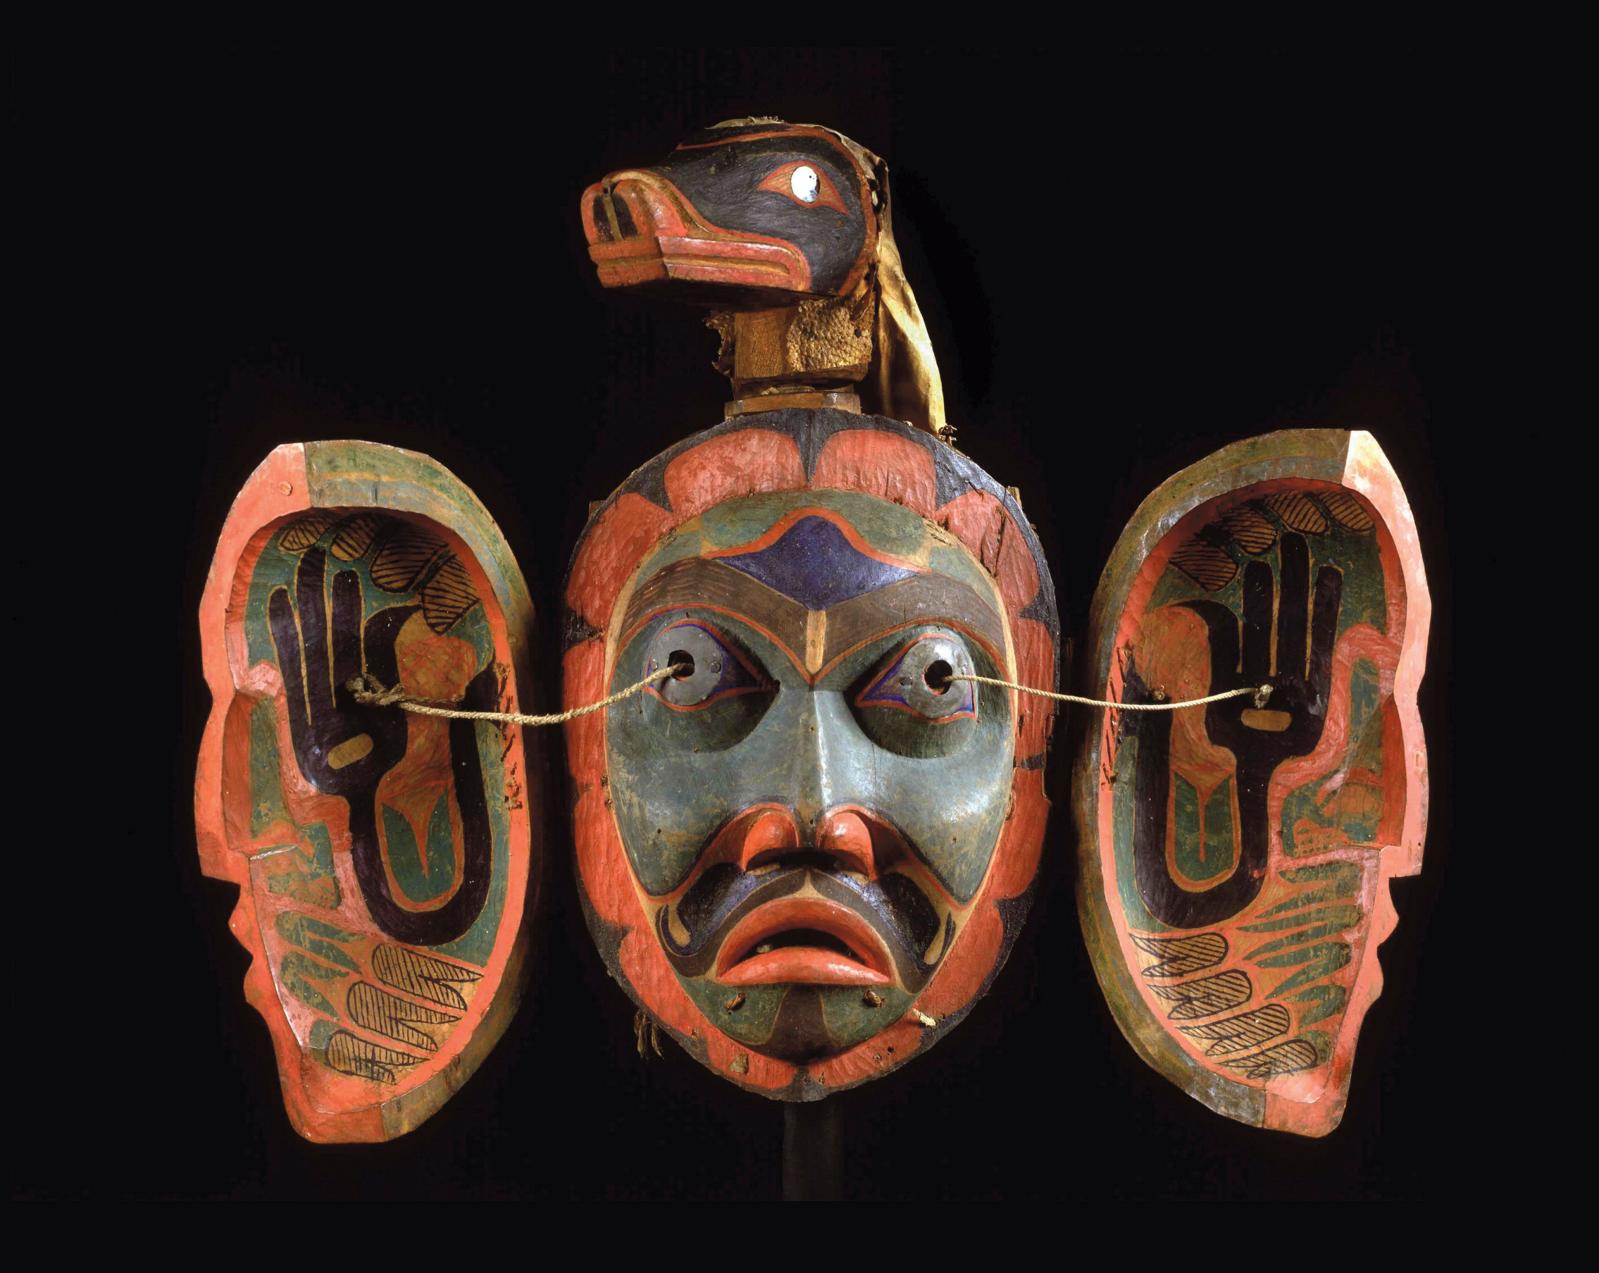 Canada, Colombie-Britannique, avant 1881. Masque à transformation, Fort Rupert, île de Vancouver, cèdre rouge sculpté et peint. © Staatlic